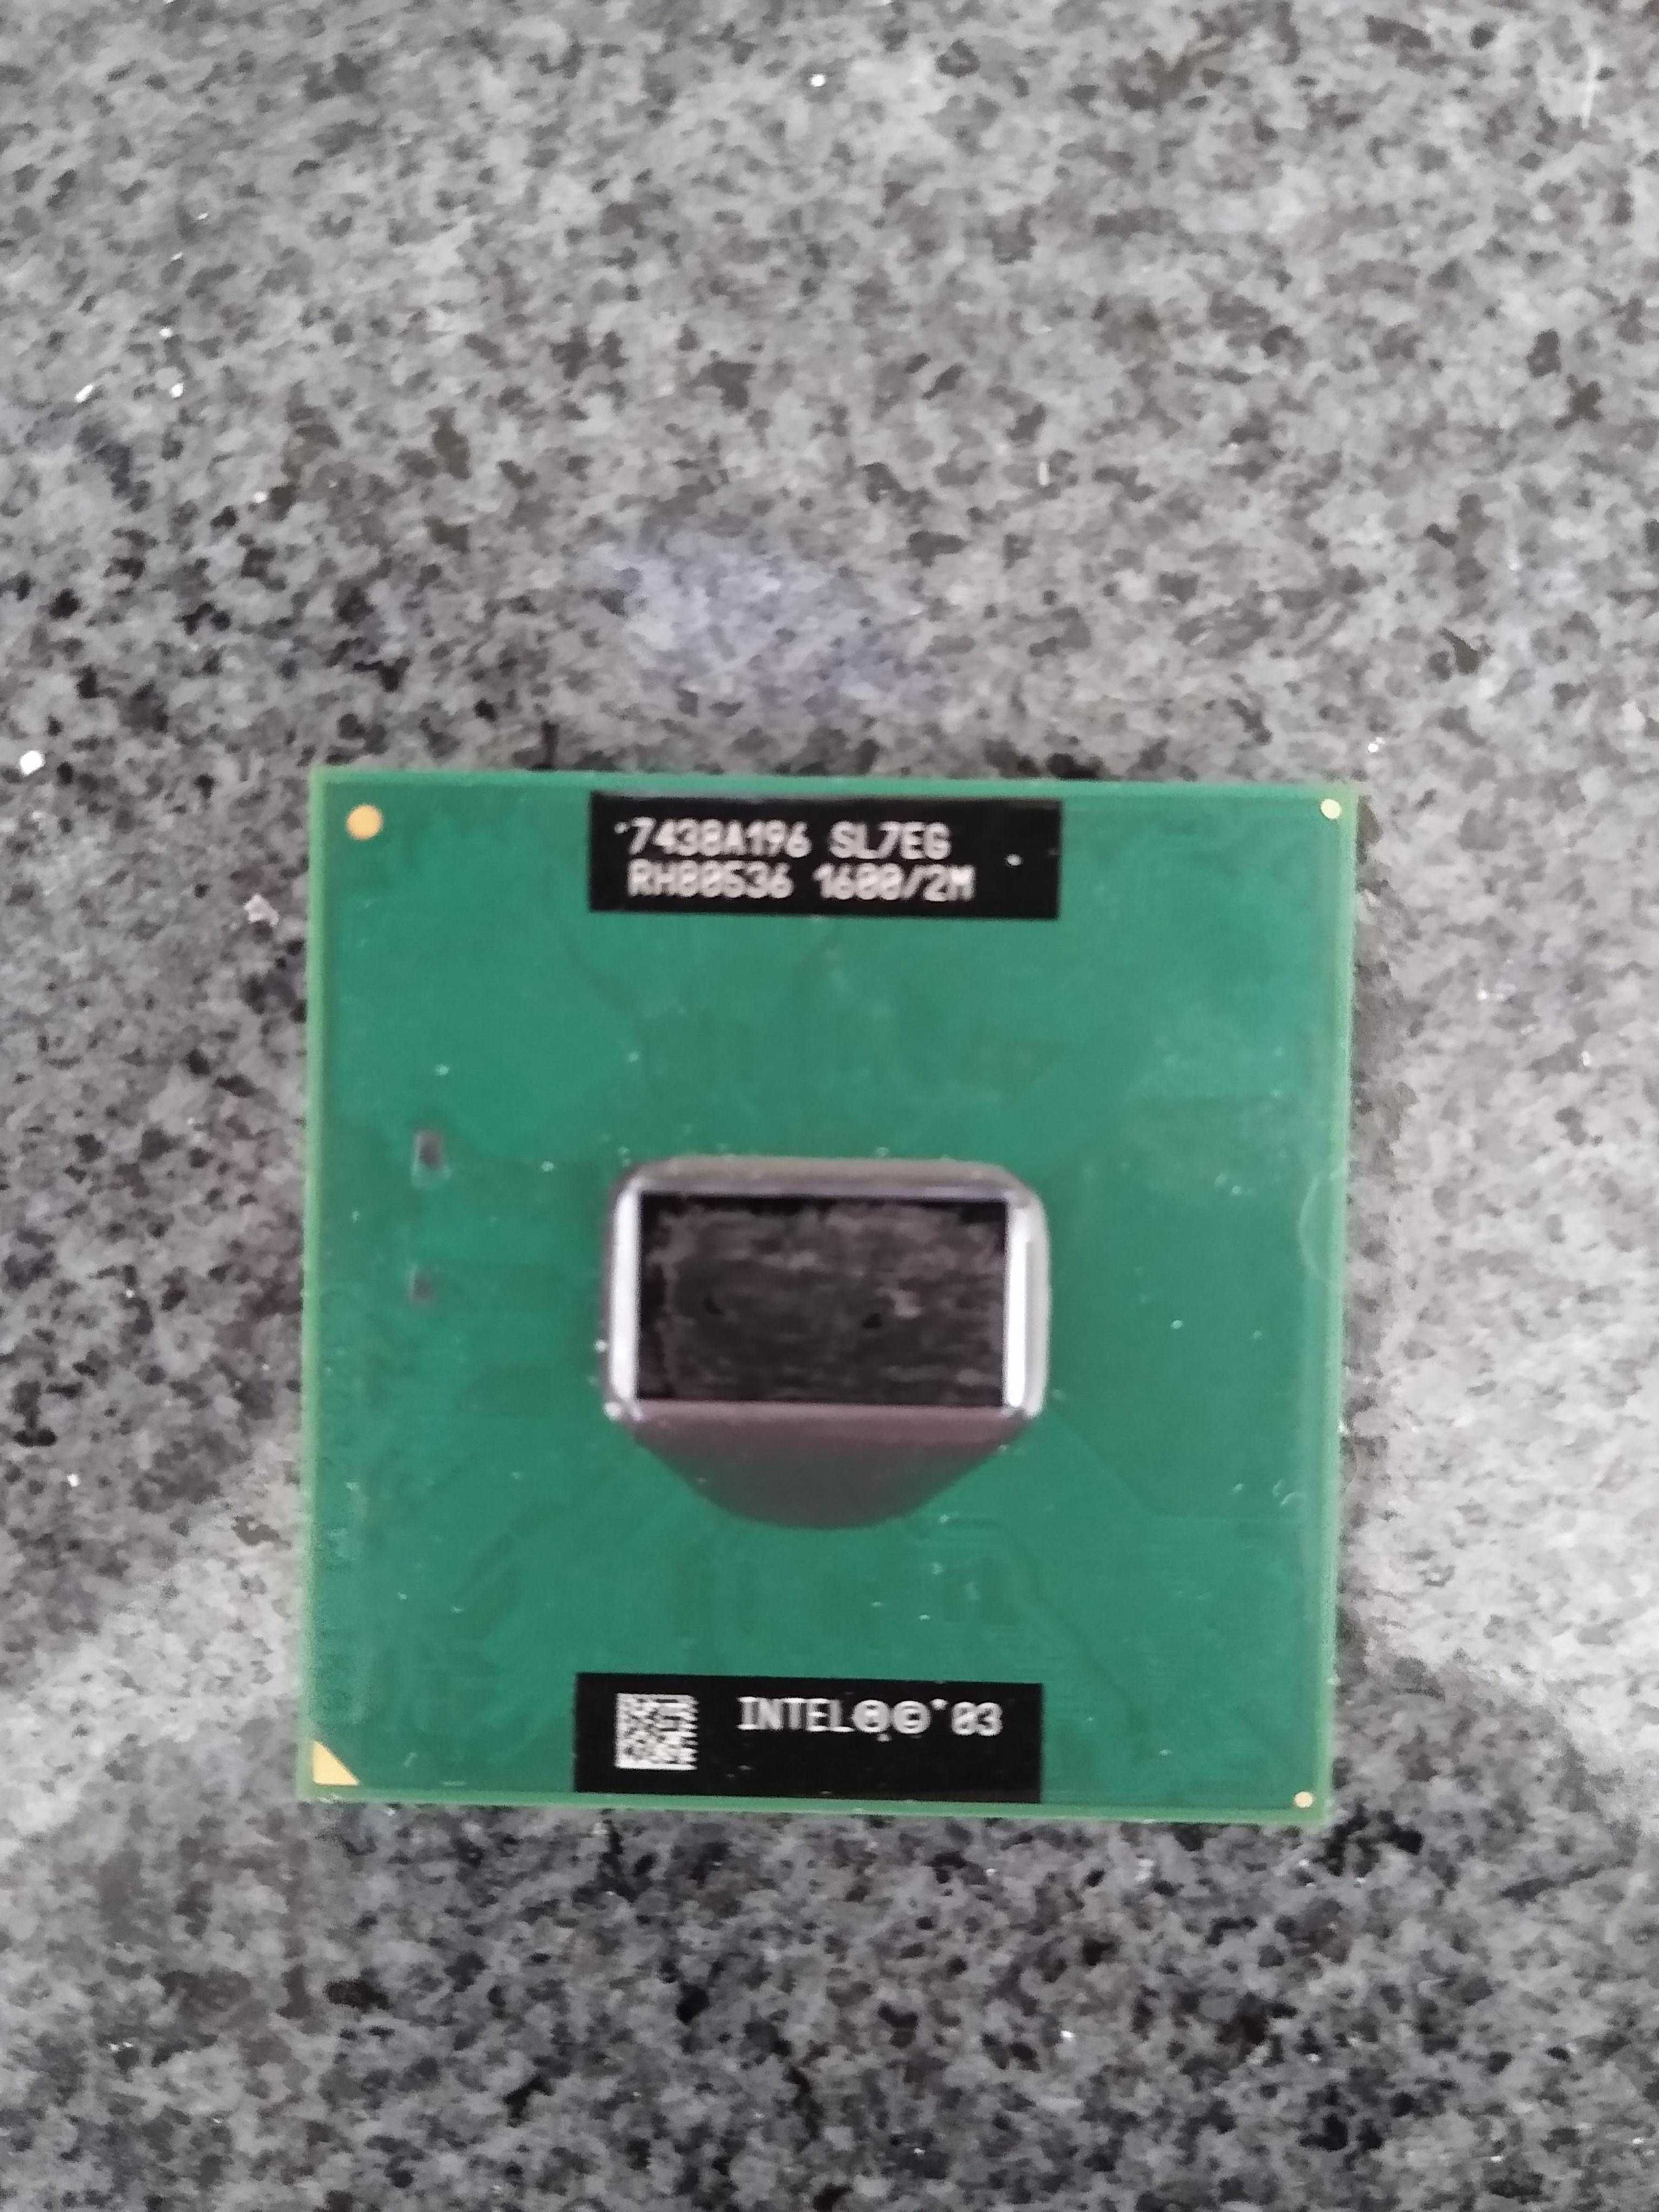 procesor Pentium M 725 1600MHz 2M cache